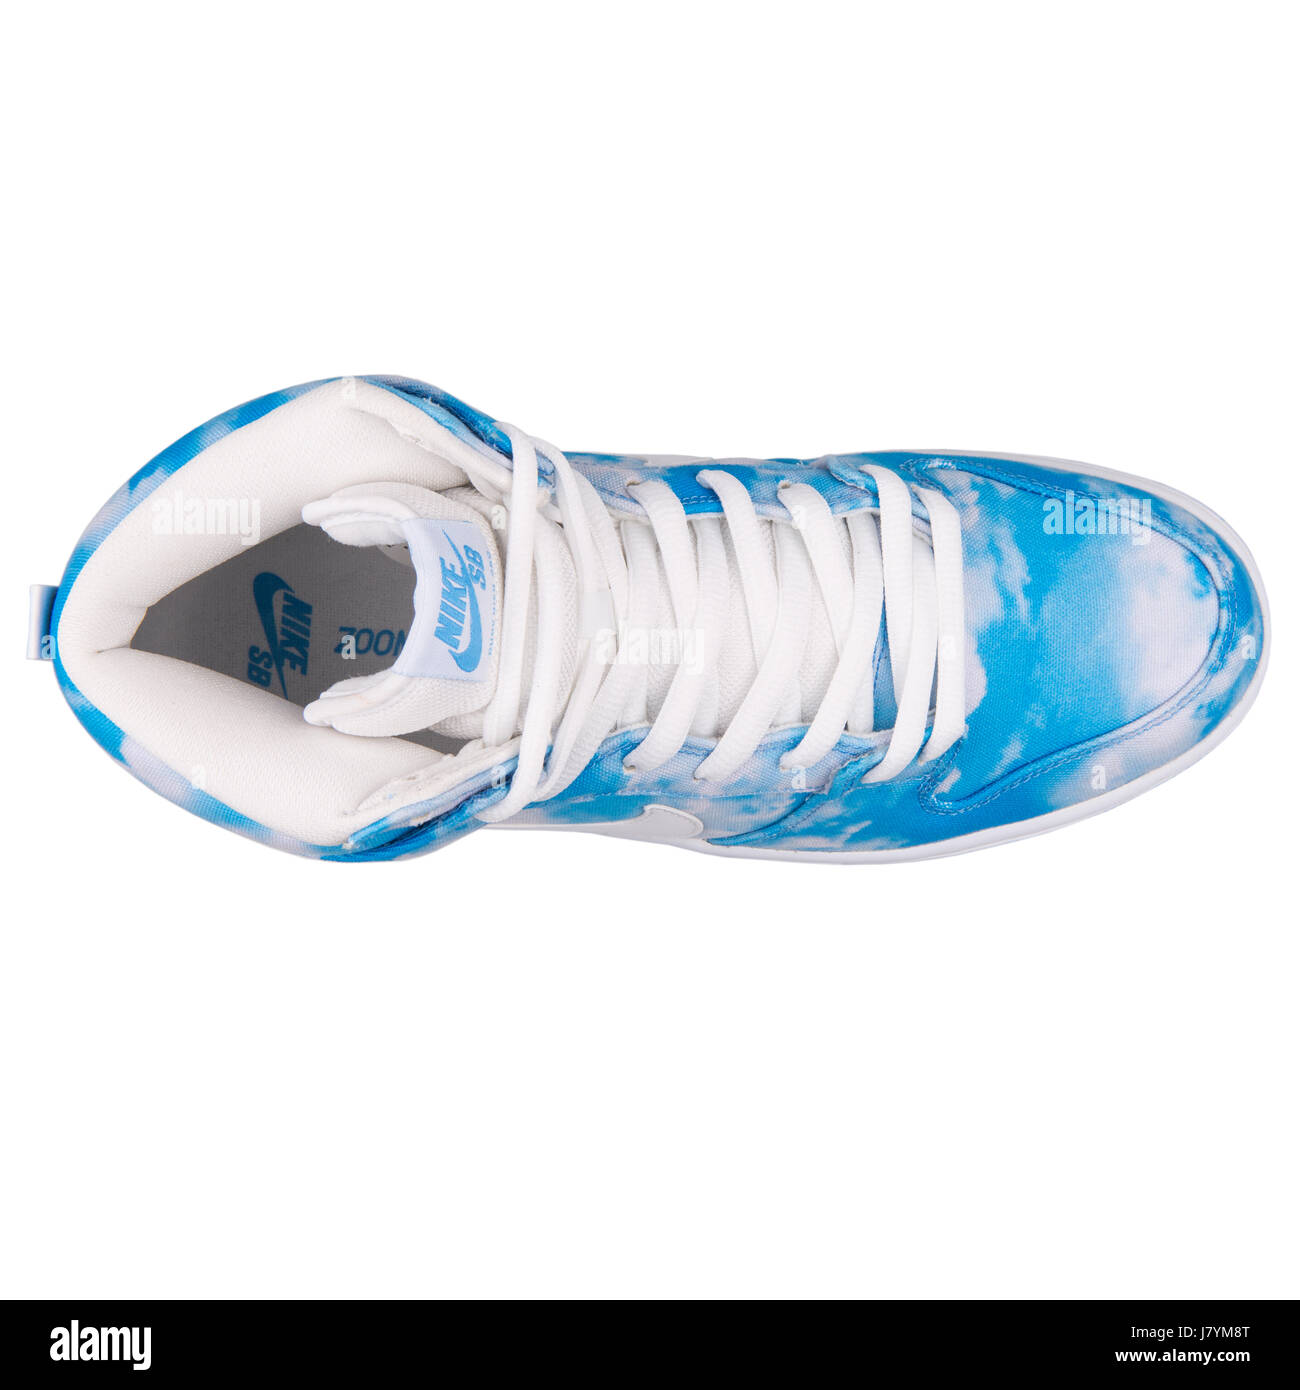 Nike Dunk High Pro SB Clouds Blue Pattern - 305050-414 Stock Photo - Alamy